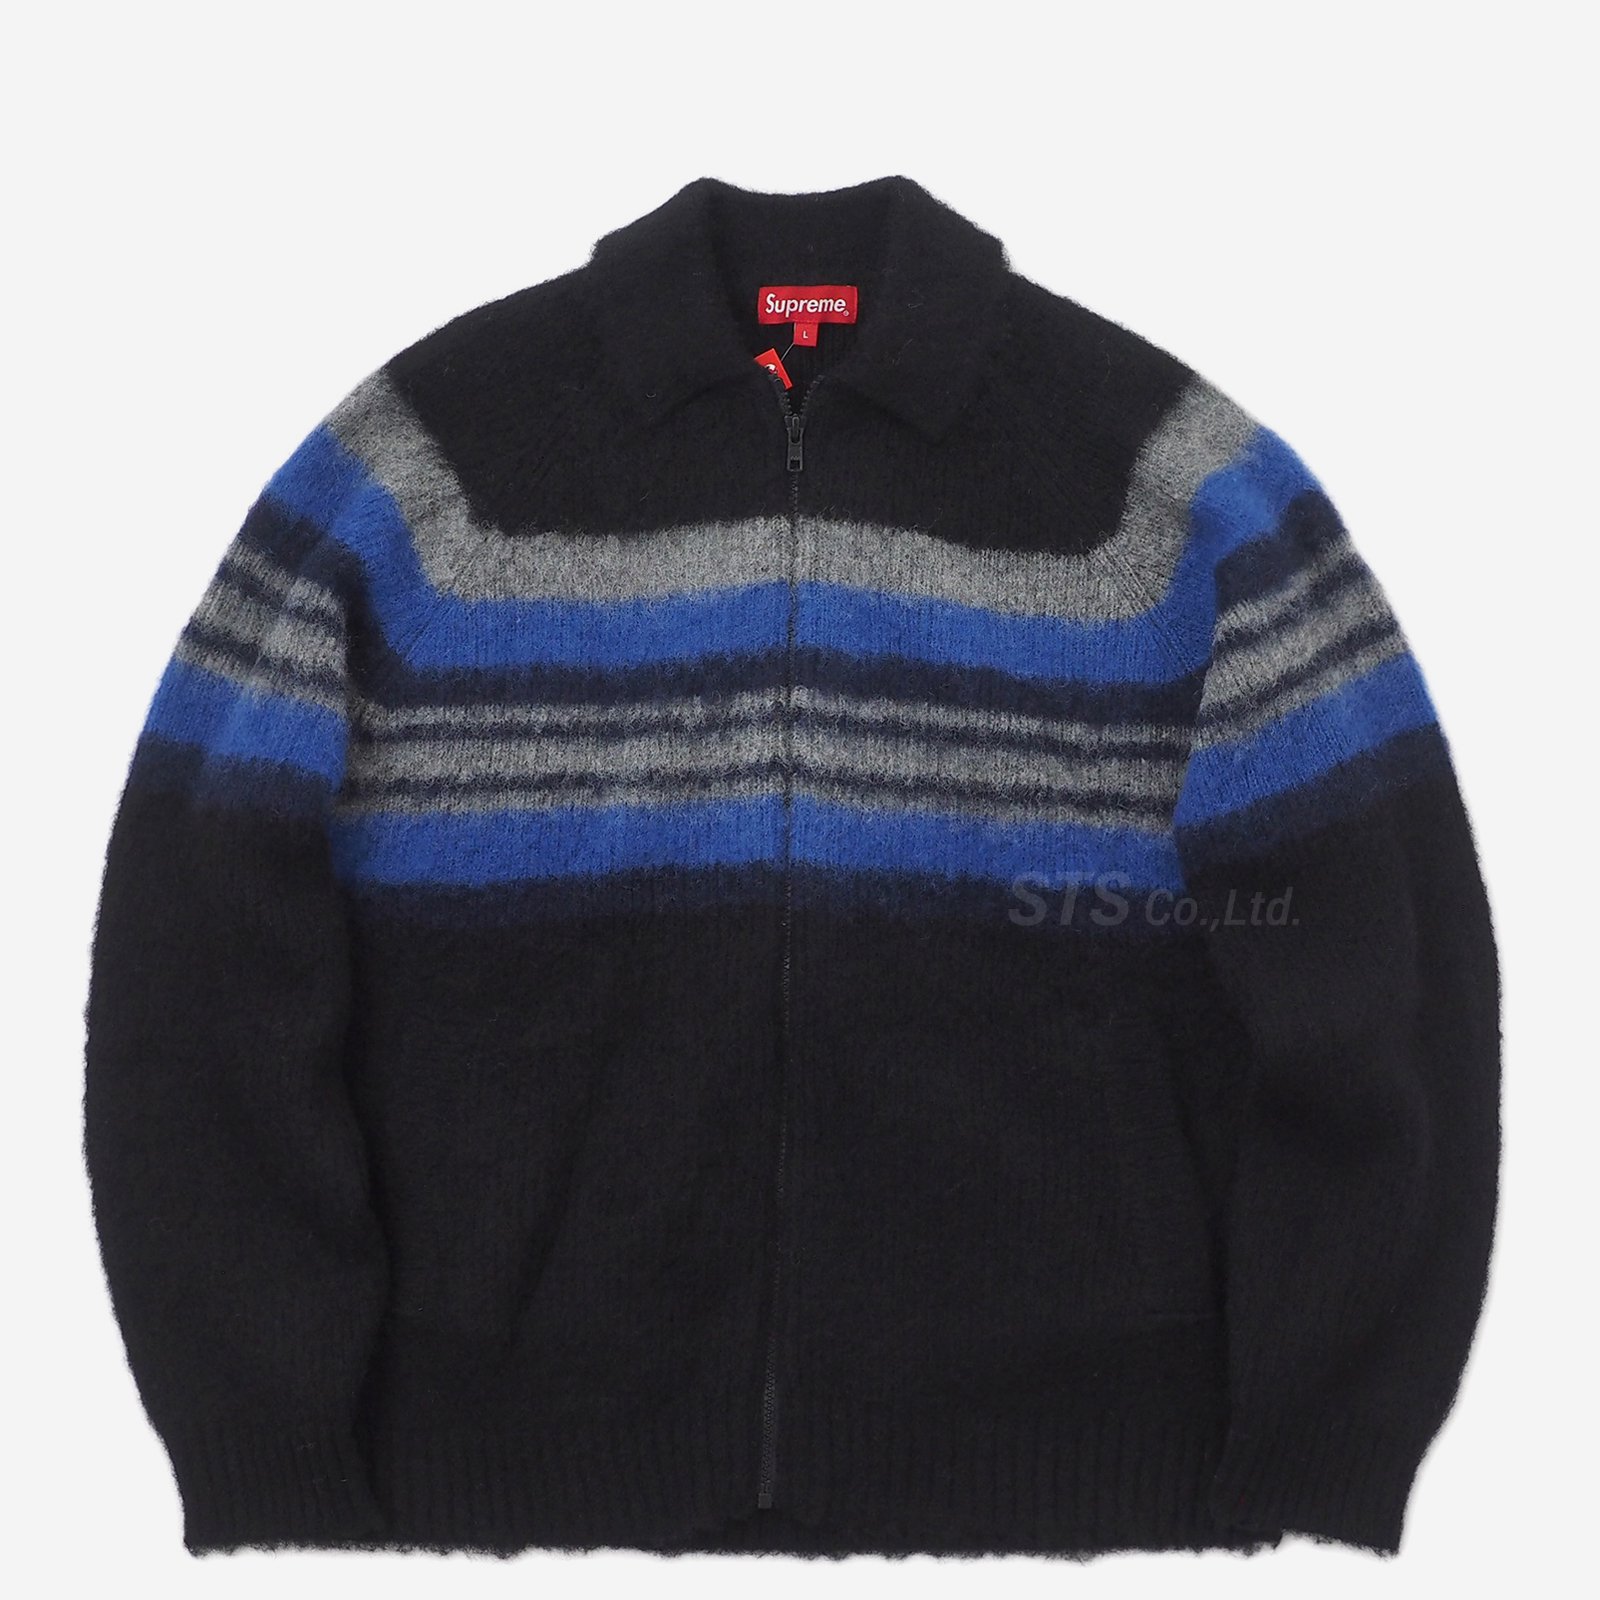 9,200円Supreme Brushed Wool Zip Up Sweater